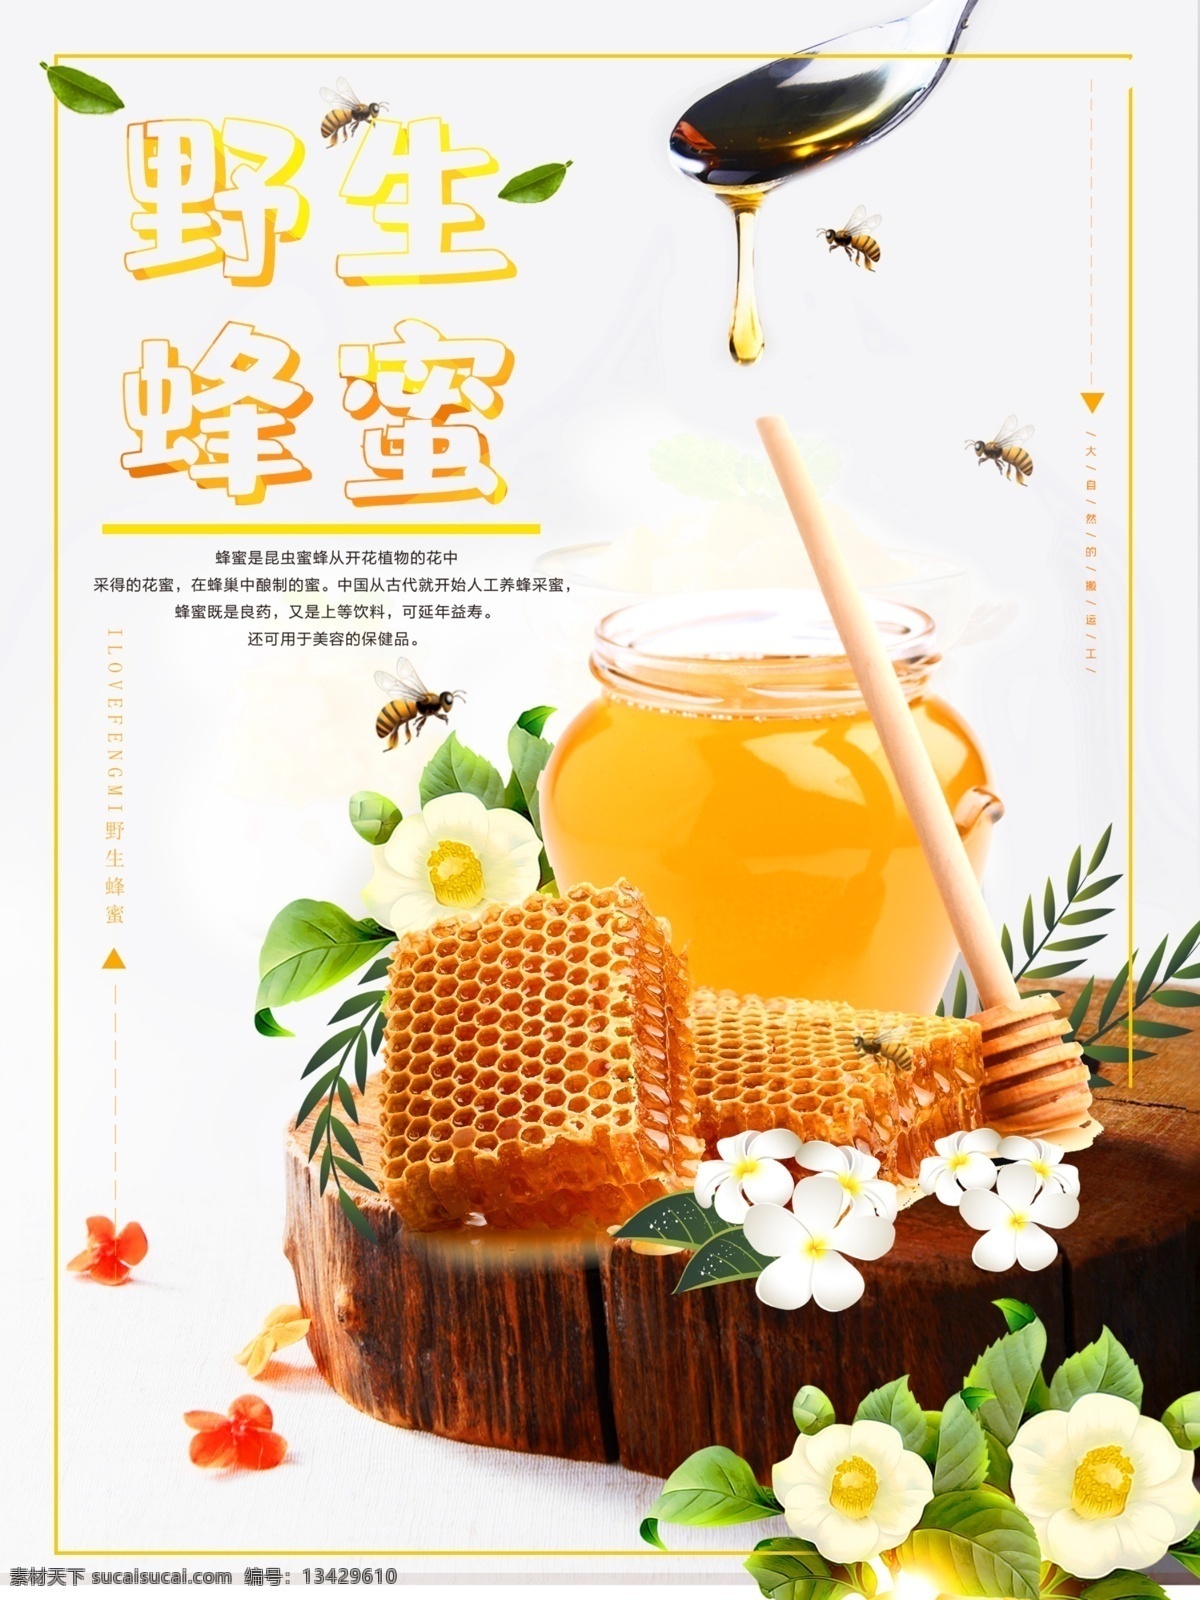 阳光 健康 天然 蜂蜜 宣传海报 天然蜂蜜 蜂蜜海报 蜂蜜展板 蜂蜜促销 蜂蜜打折 养生蜂蜜 养生 纯蜂蜜 纯正 自然 蜂蜜促销展板 纯天然食品 养生食品